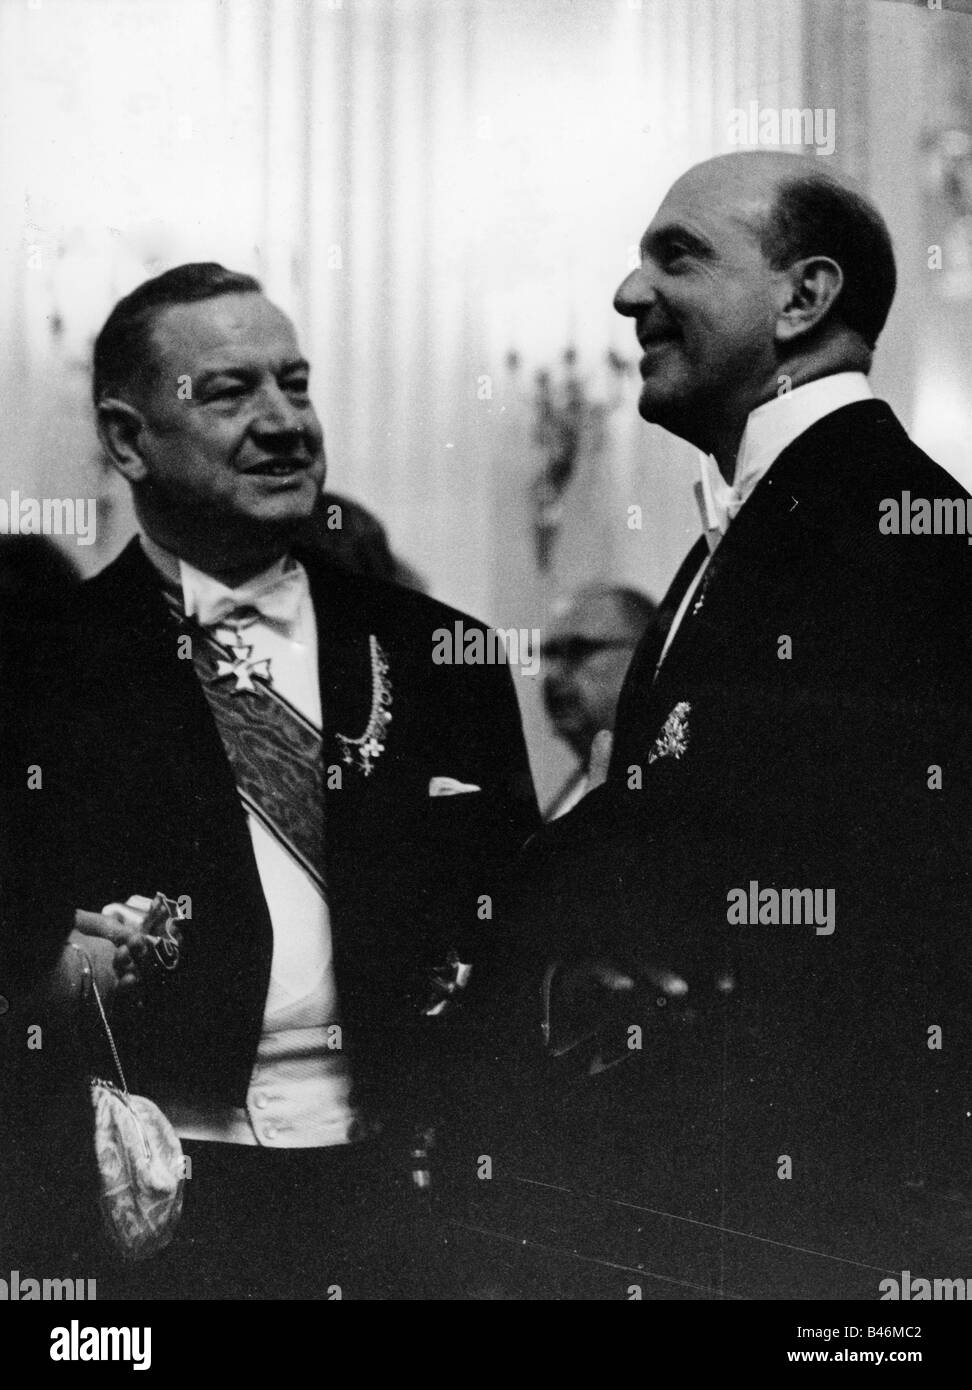 Goppel, Alfons, 1.10.1905 - 24 12.1991, politico tedesco (CSU), primo ministro della Baviera 11.12.1962 - 7.11.1978, alla riapertura del Teatro Nazionale di Monaco, 22.11.1963, con il re Humbert II d'Italia, Foto Stock